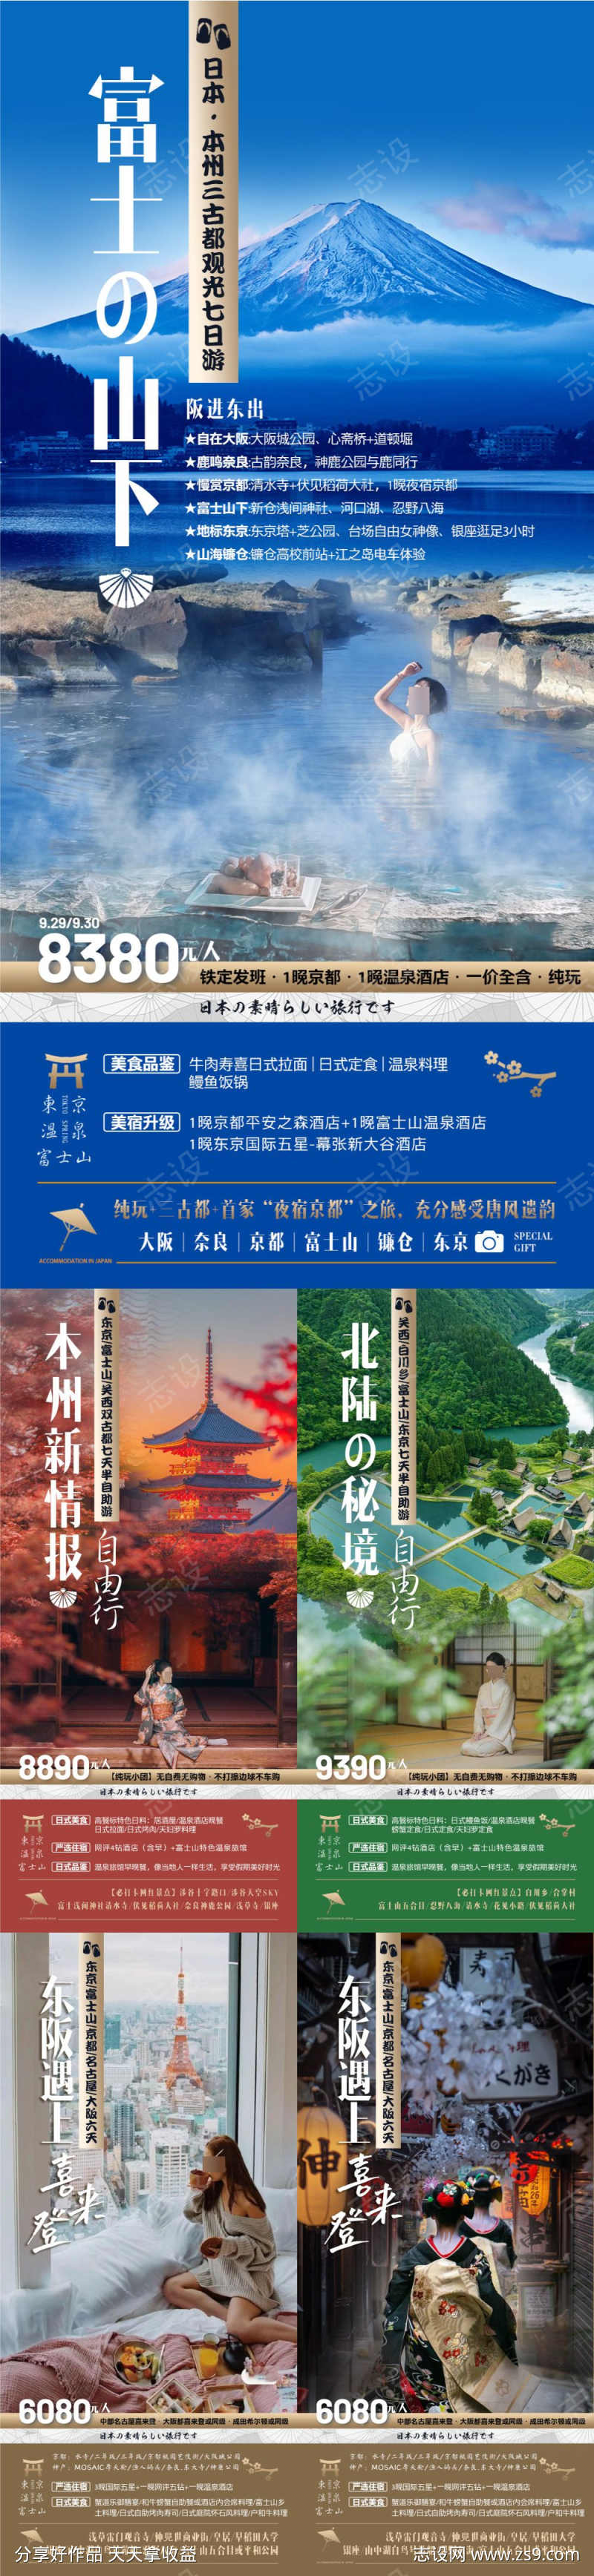 日本旅游系列海报